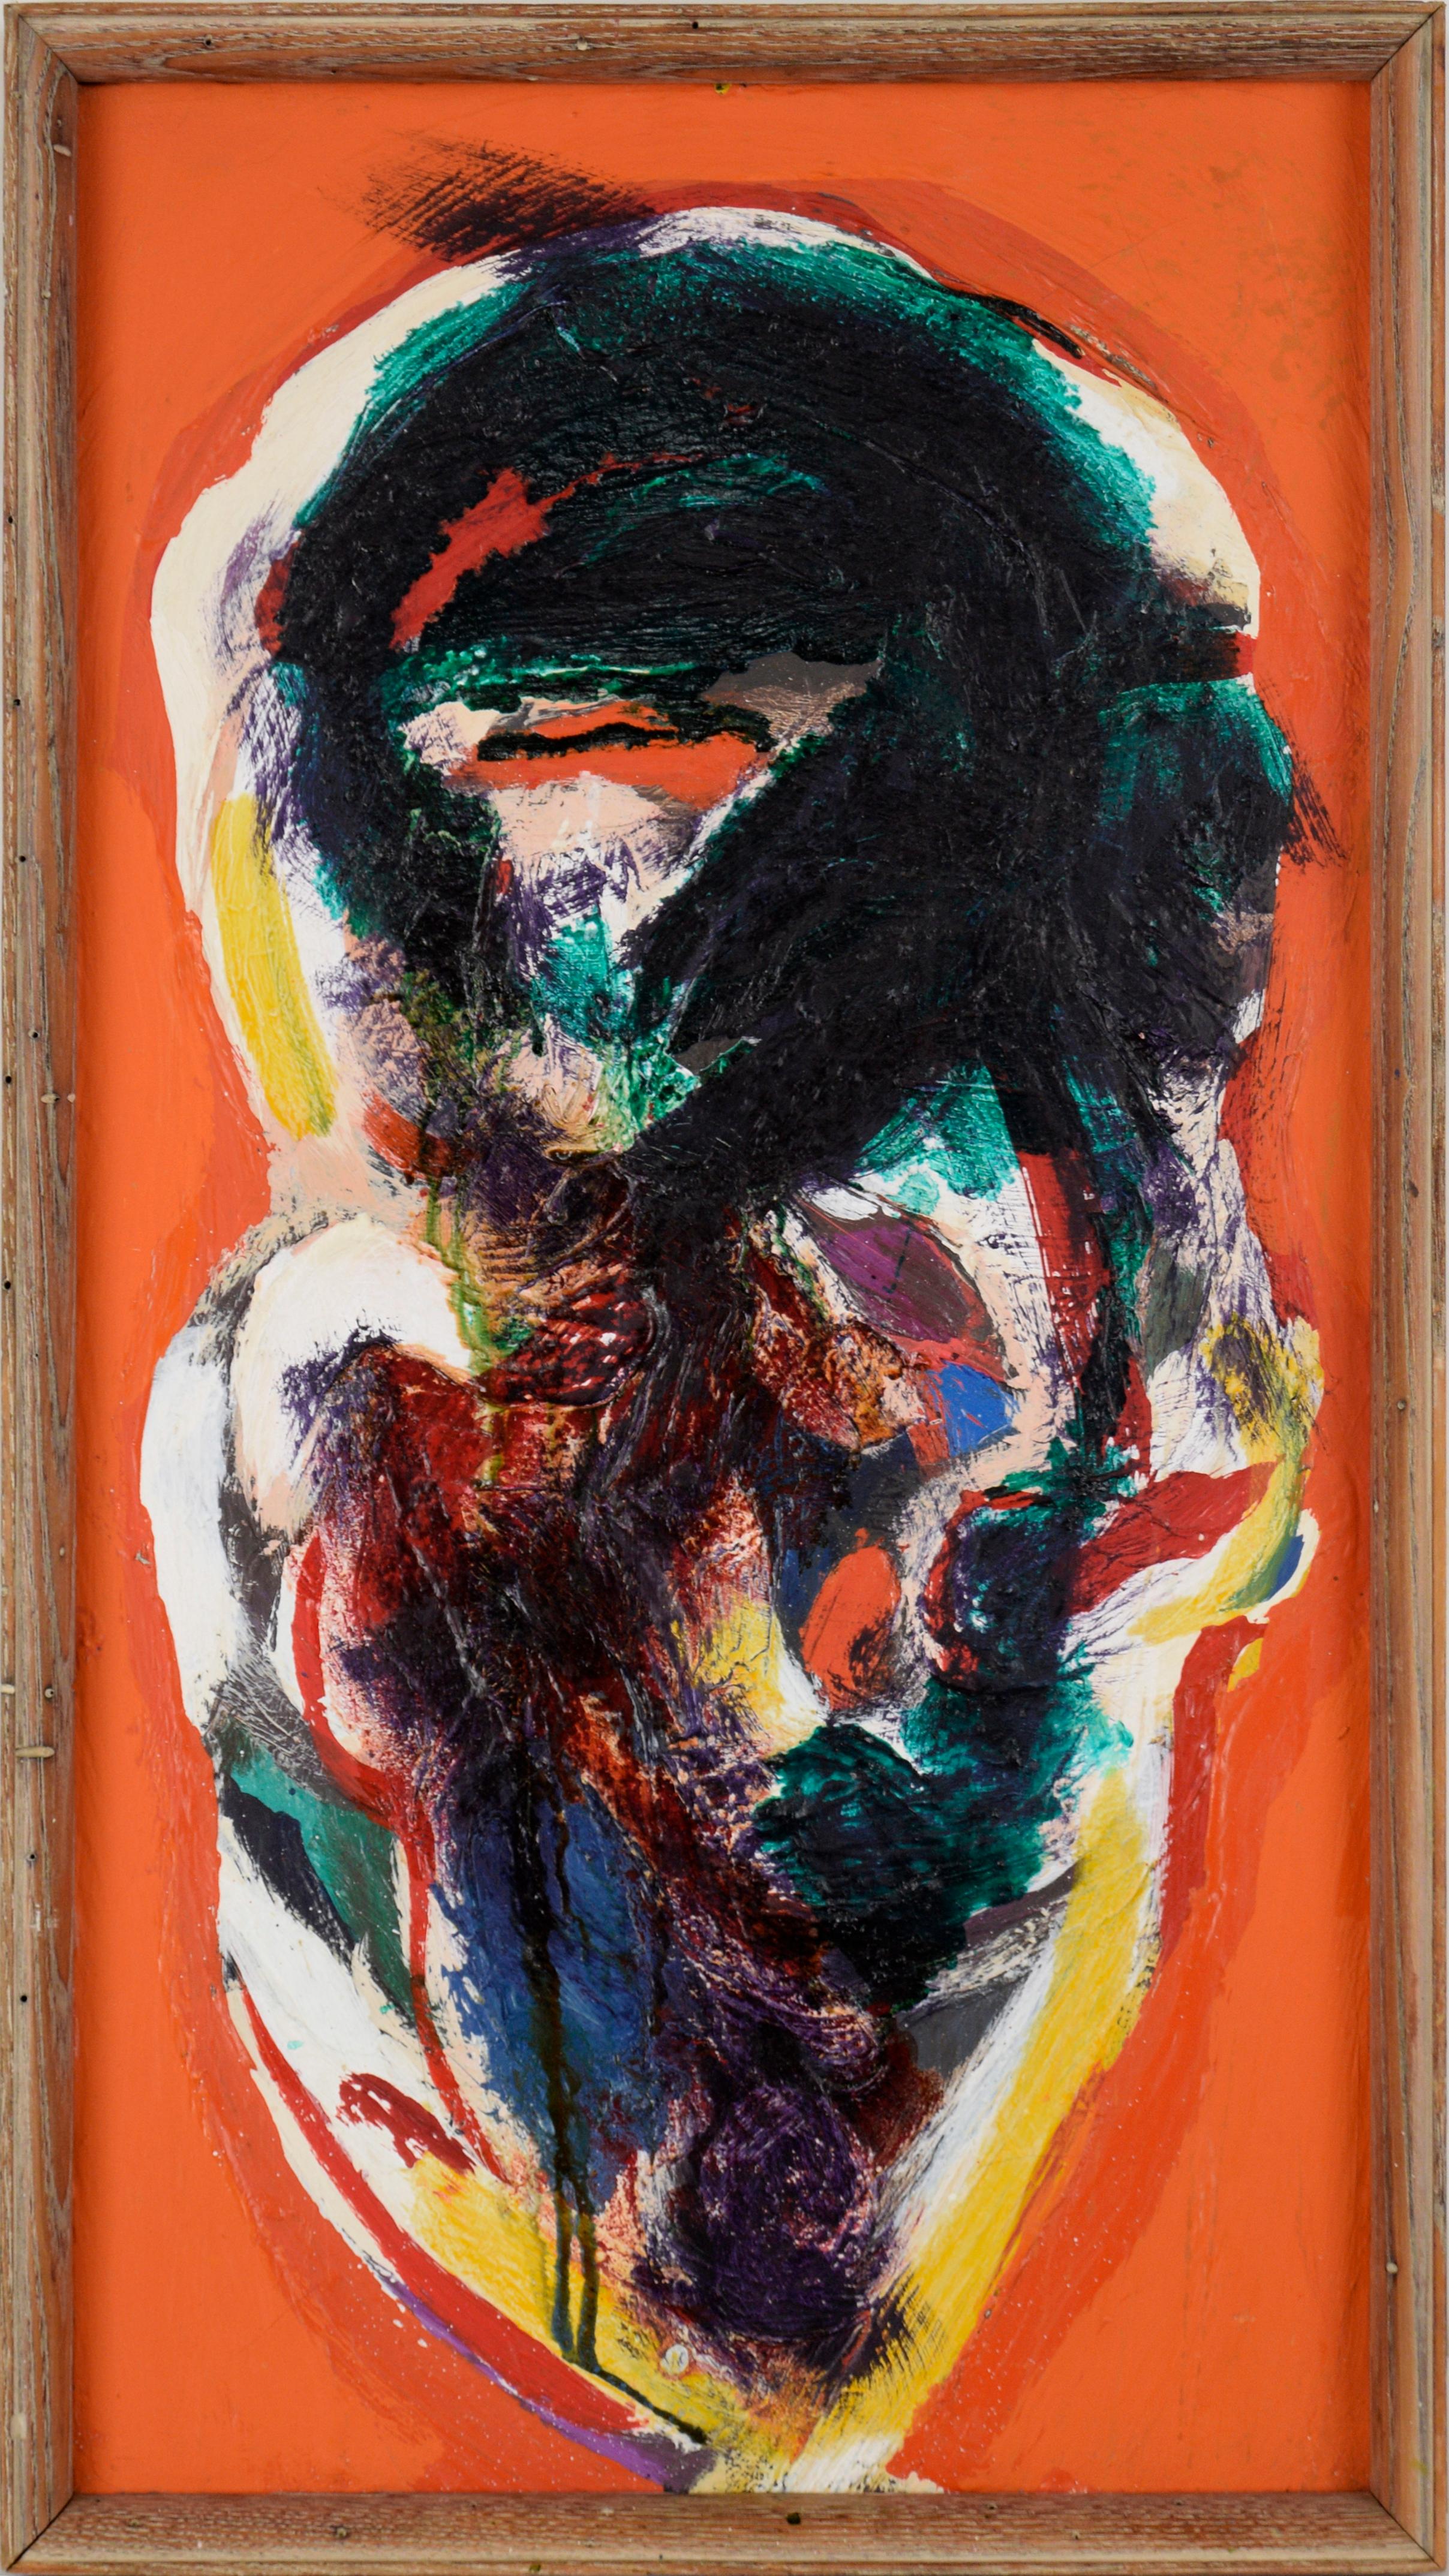 Peter Witwer Abstract Painting – Abstrakte expressionistische Komposition auf einem orangefarbenen Feld - Öl auf Leinwand